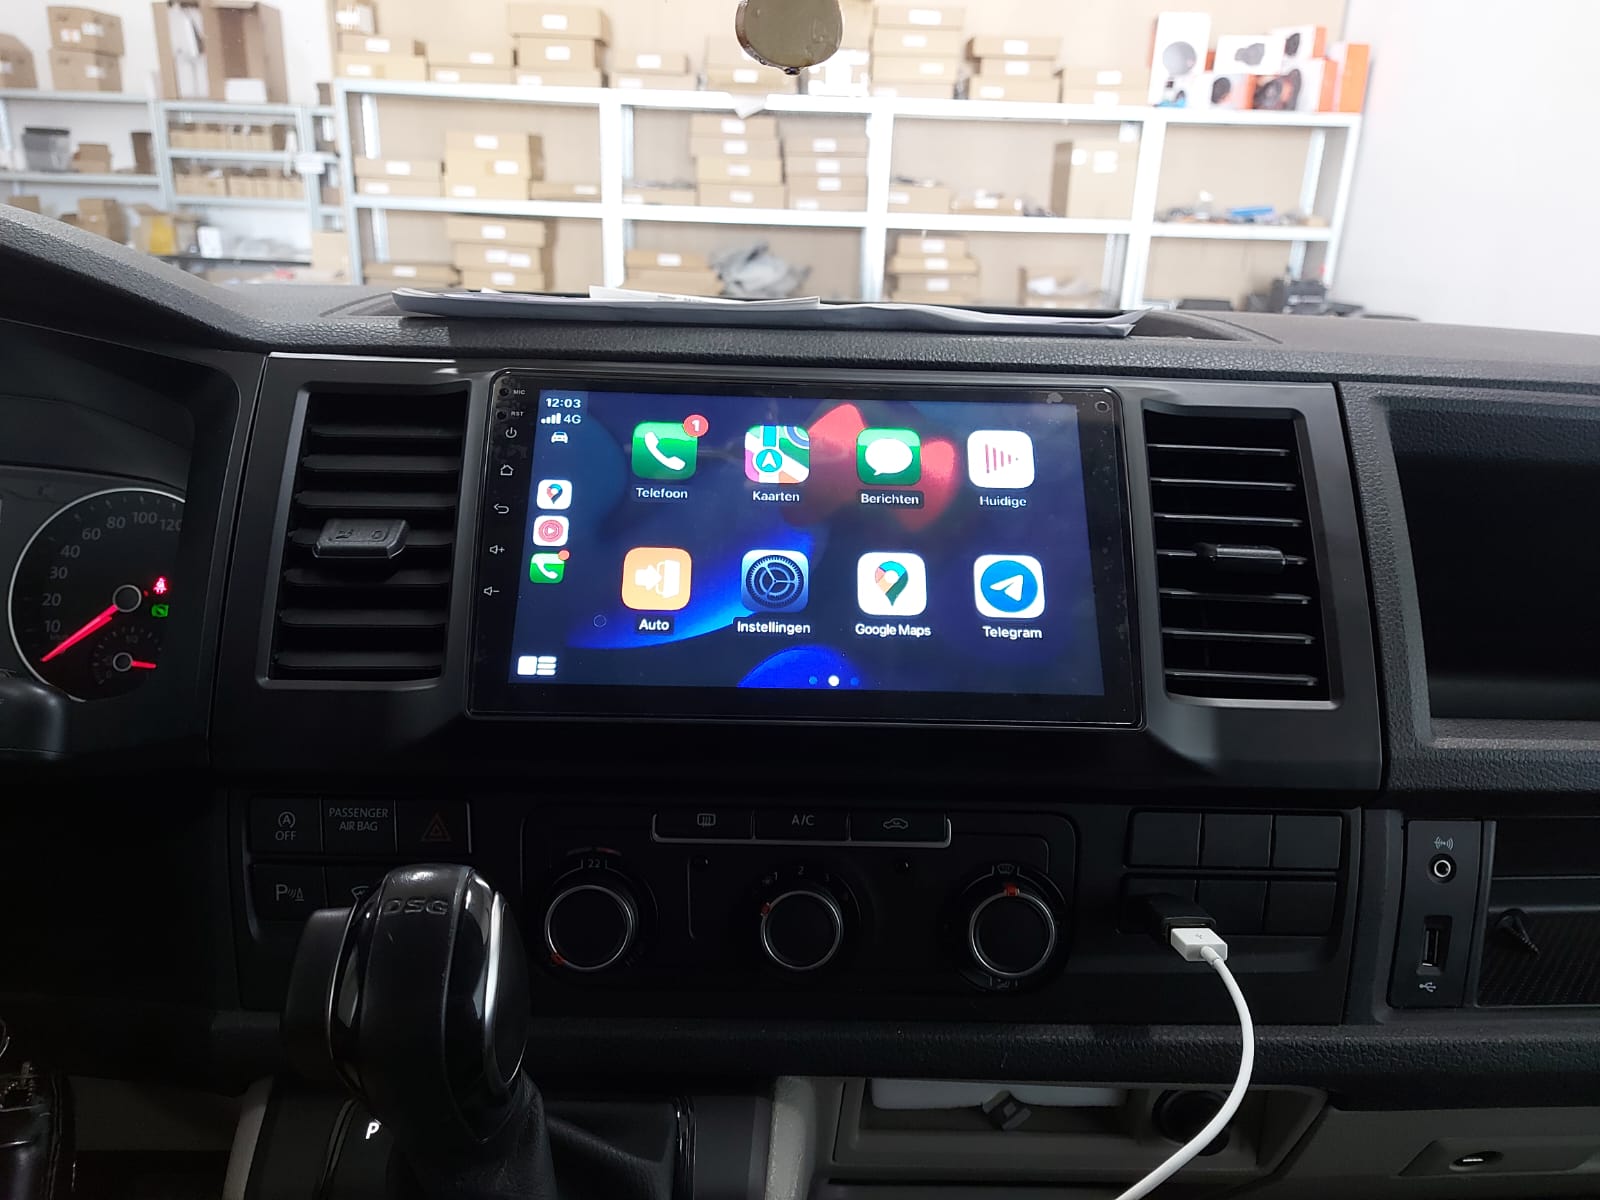 reactie belegd broodje opgraven Navigatie radio VW Volkswagen T6 Transporter, Android, Apple Carplay, 9  inch scherm, GPS, Wifi, Bluetooth - Bestgadgets4u